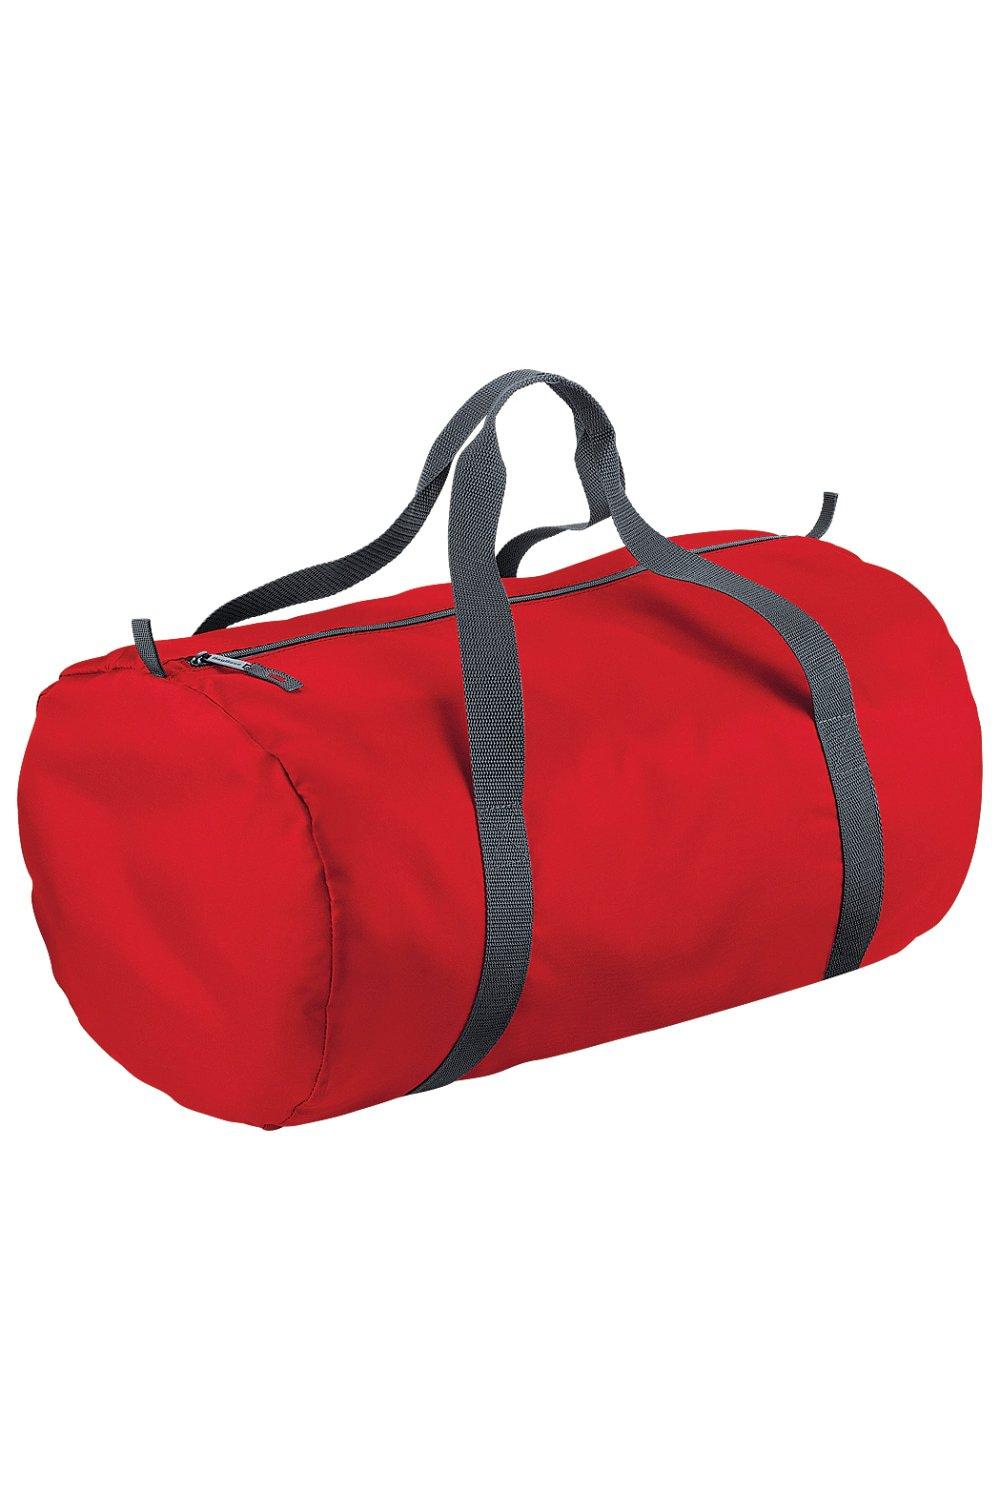 Водонепроницаемая дорожная сумка Packaway Barrel Bag / Duffle (32 литра) Bagbase, красный